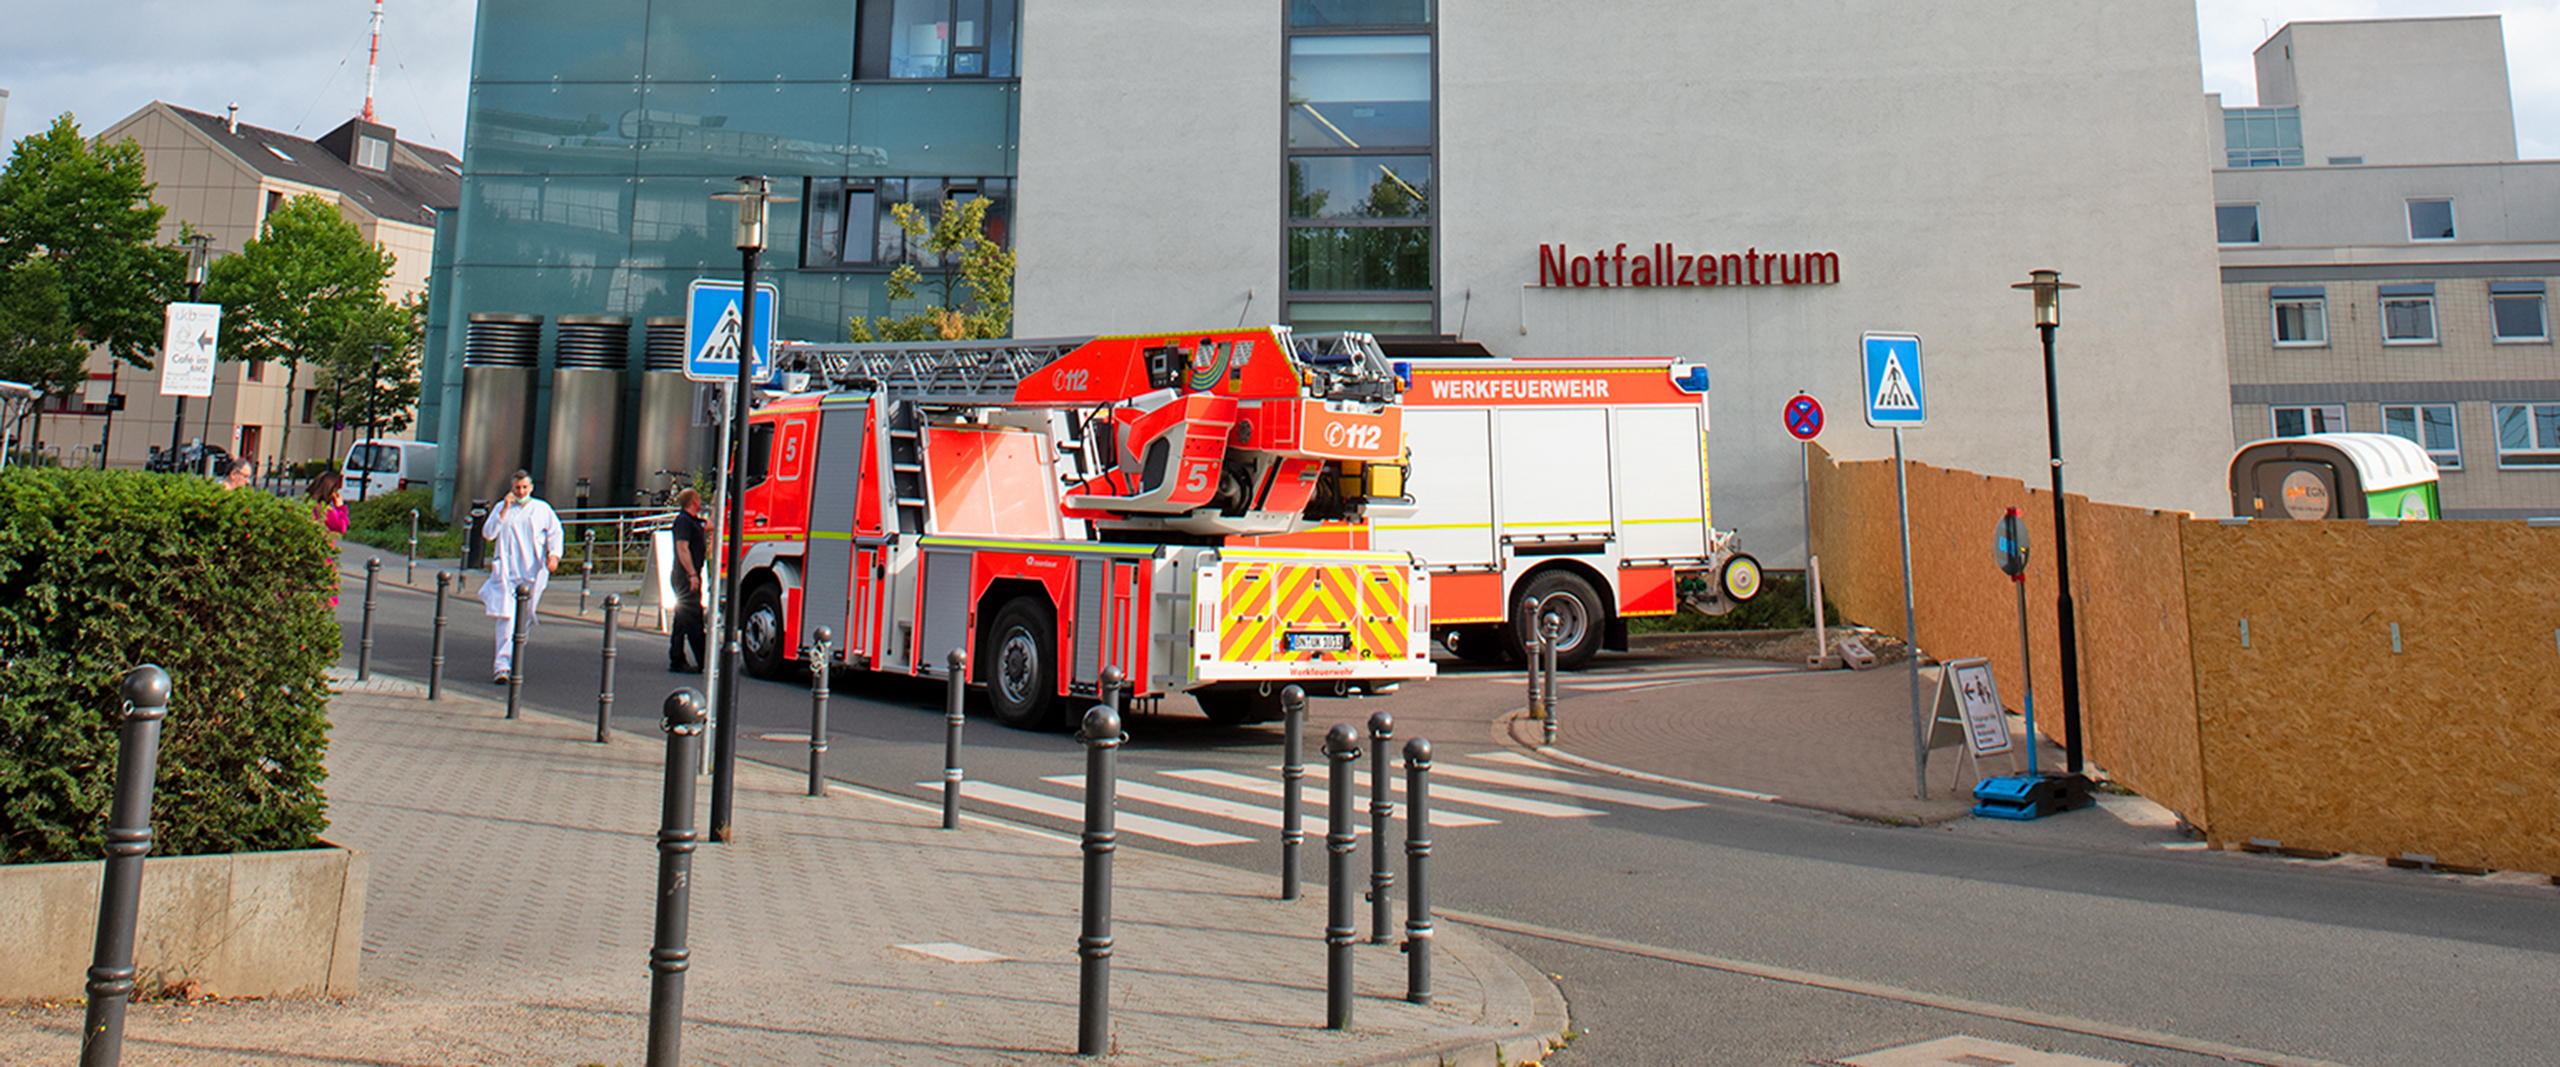 Feuerwehreinsatz in der Umgebung des Notfallzentrums am Universitätsklinikum Bonn